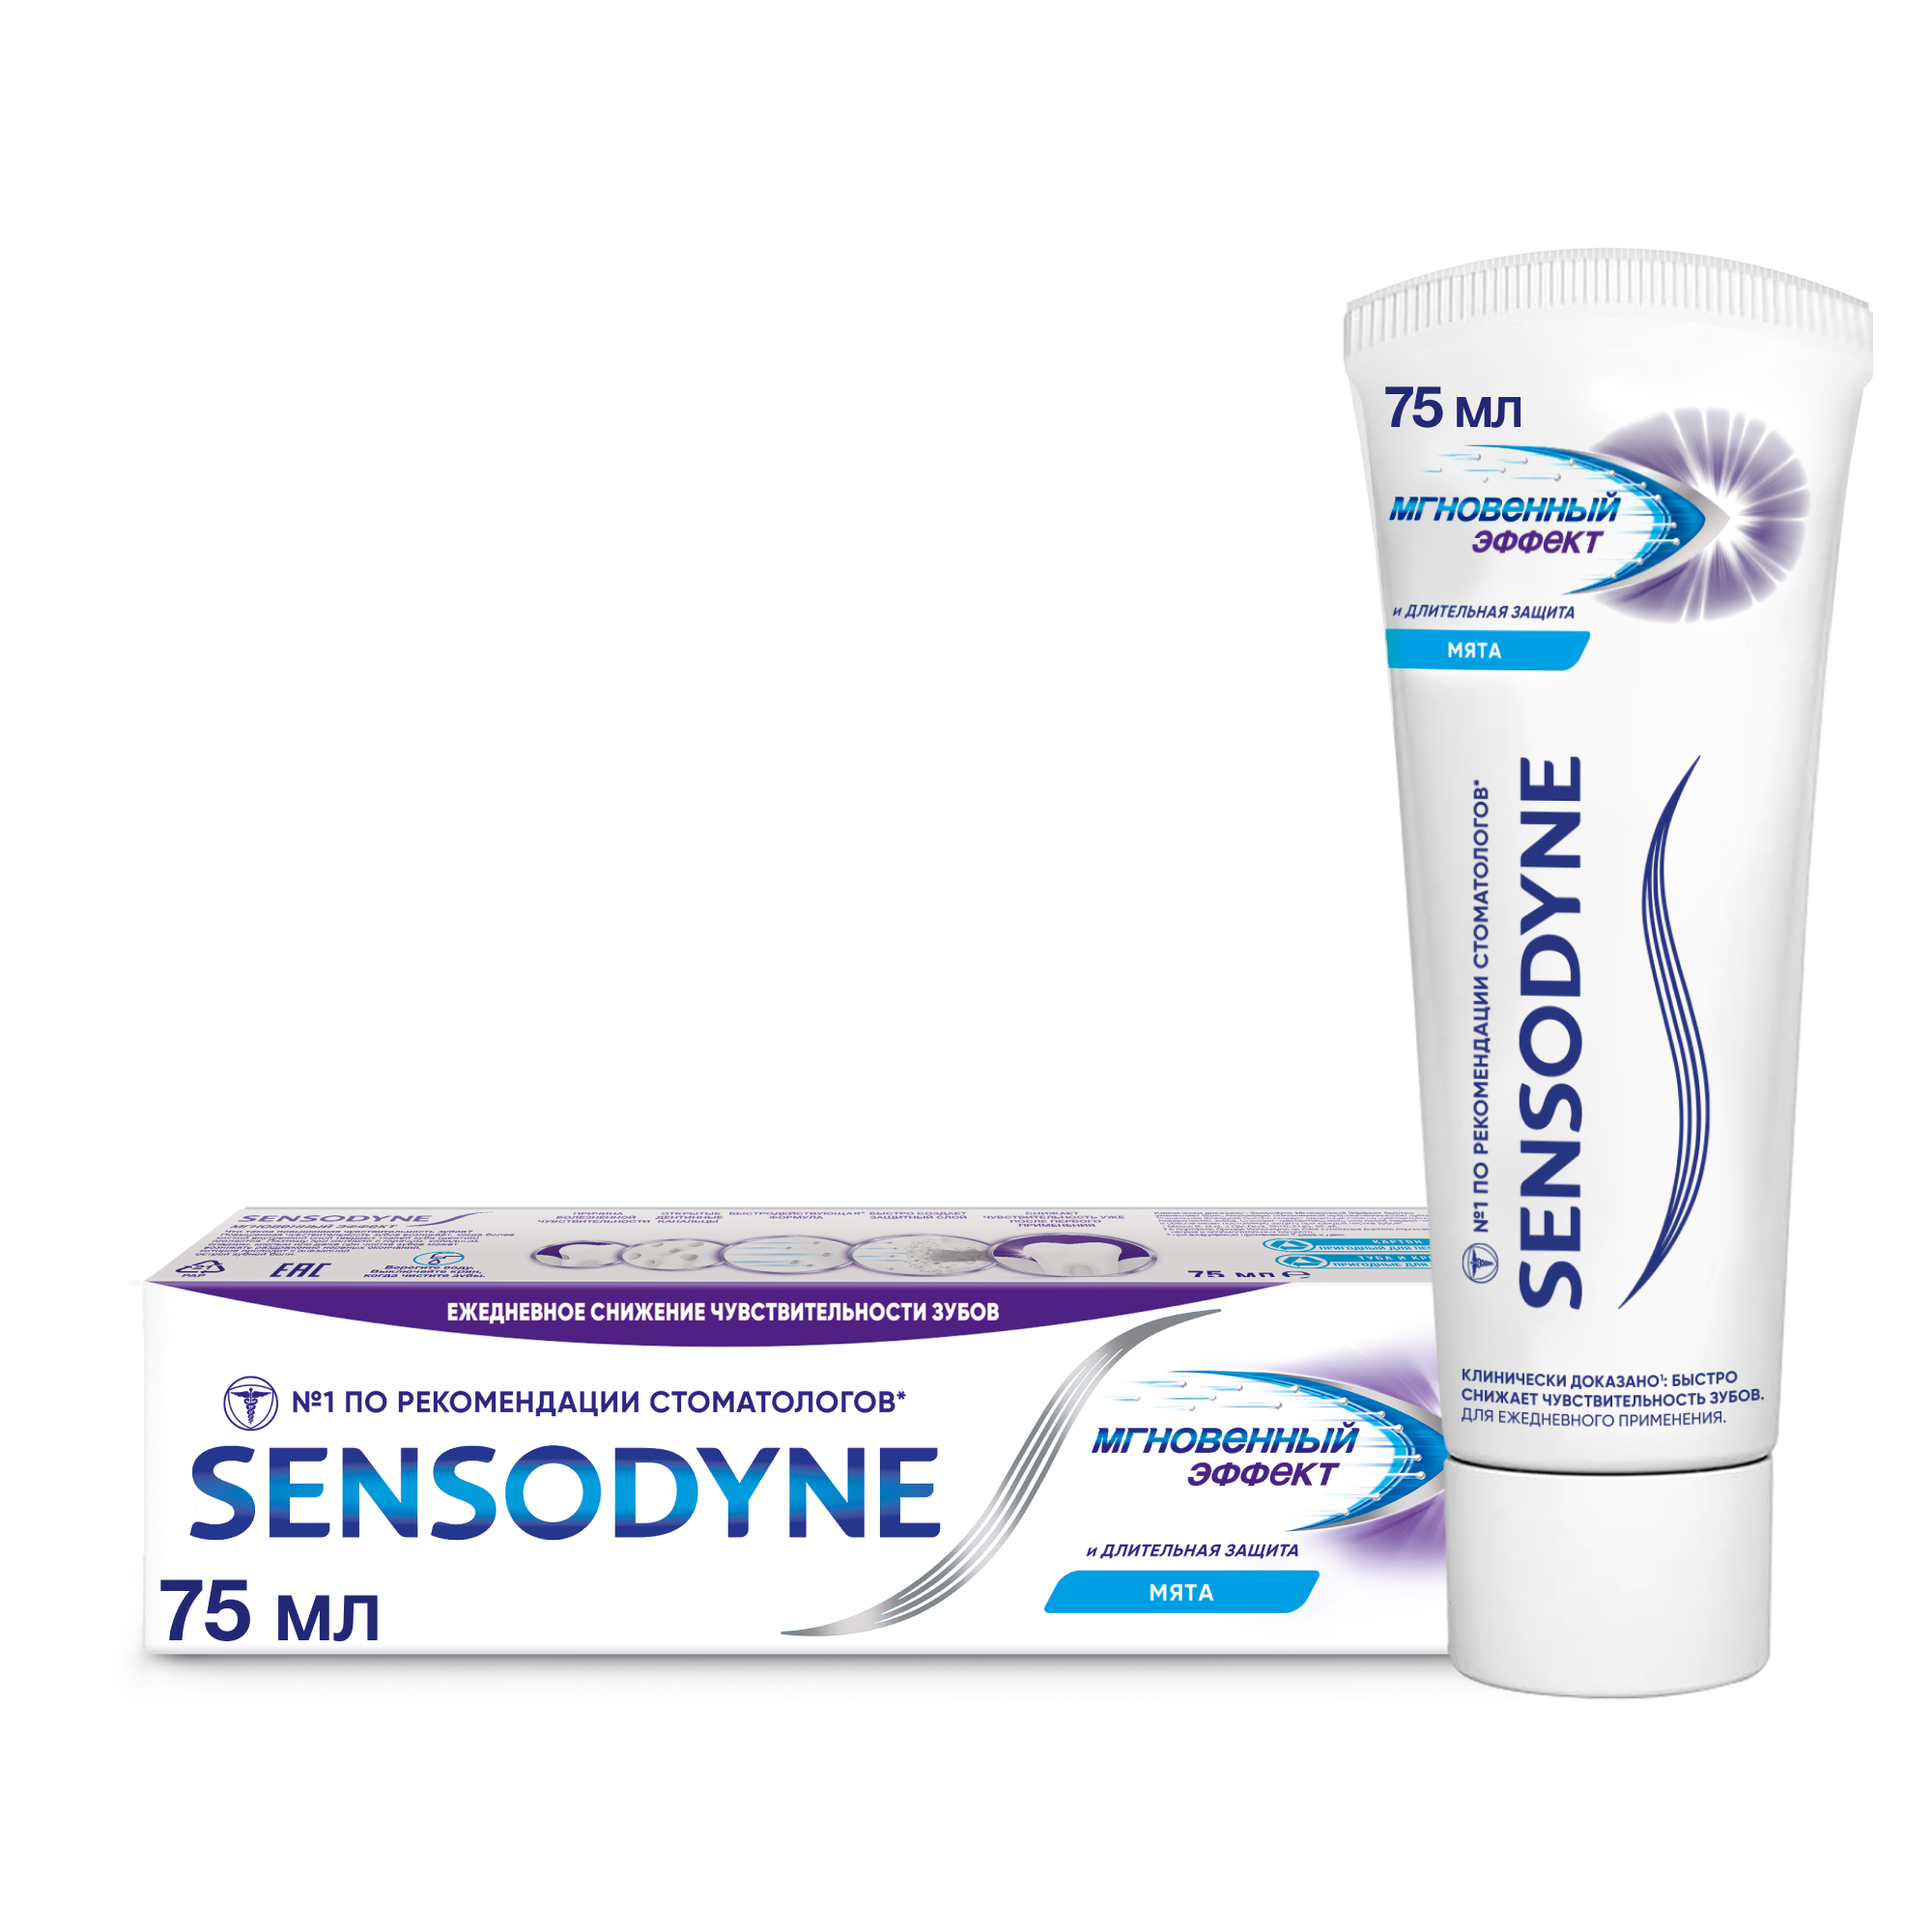 Зубная паста Sensodyne Мгновенный Эффект 75мл зубная паста sensodyne восстановление и защита 75мл p70618 pns7061800